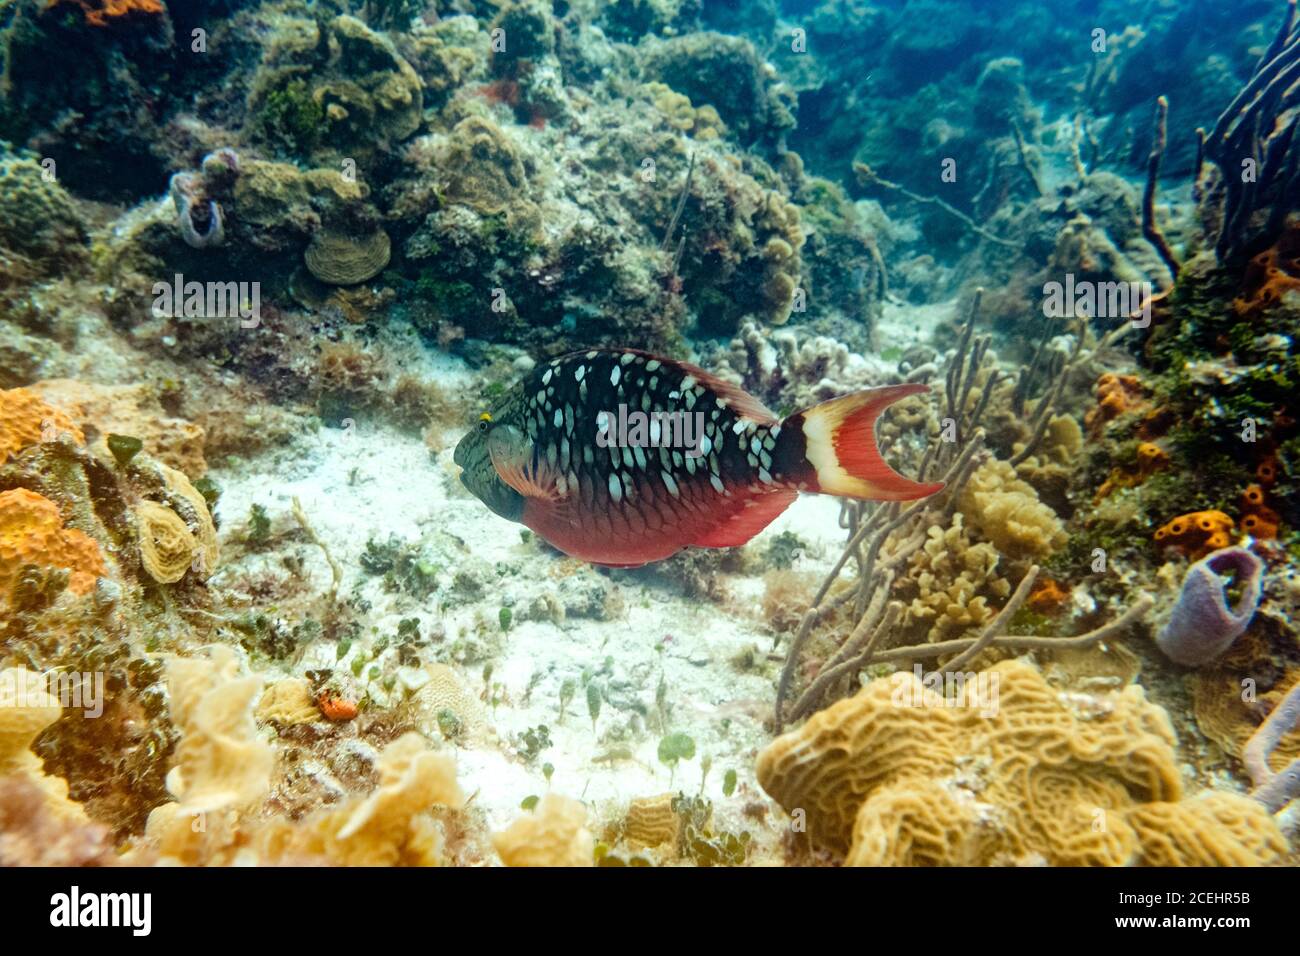 Bel pesce vicino alle barriere coralline Foto Stock